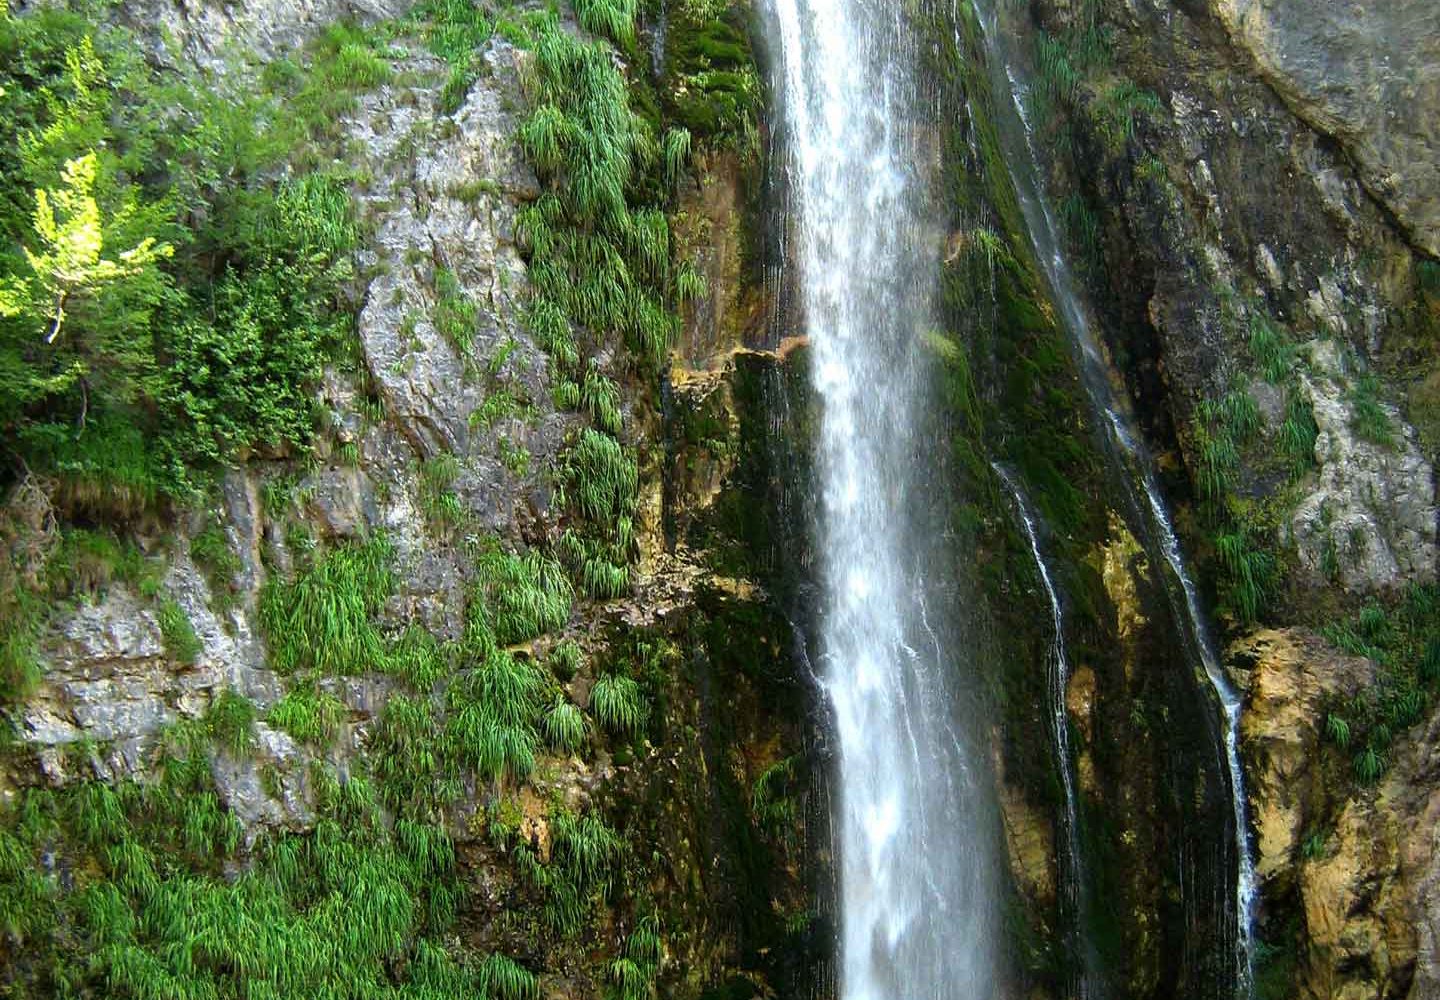 Grunasi Waterfall